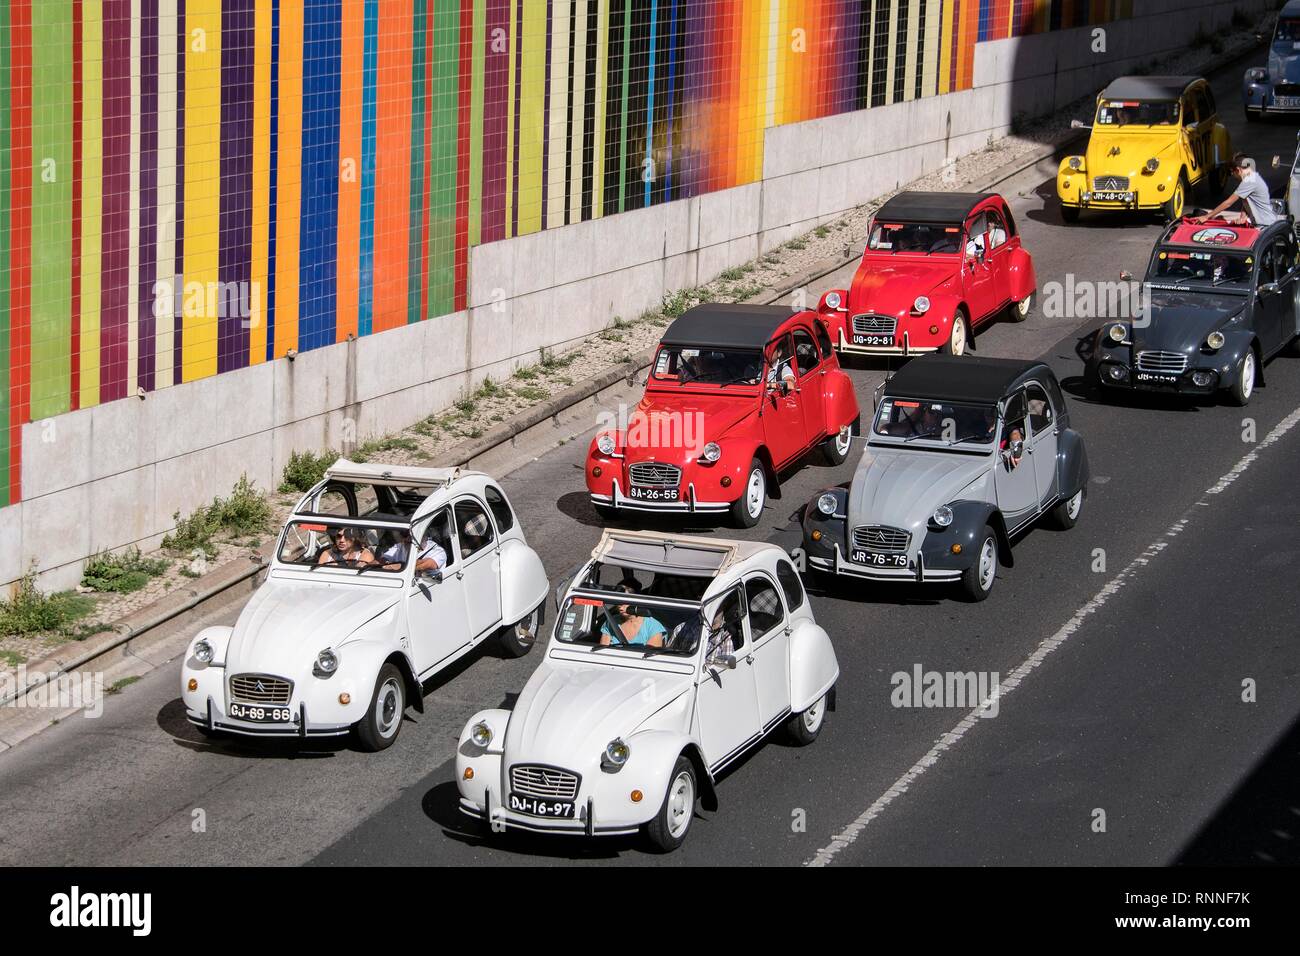 Défilé de voitures anciennes, colorées 2CV Citroën pour le 70e anniversaire de la voiture, Lisbonne, Portugal Banque D'Images